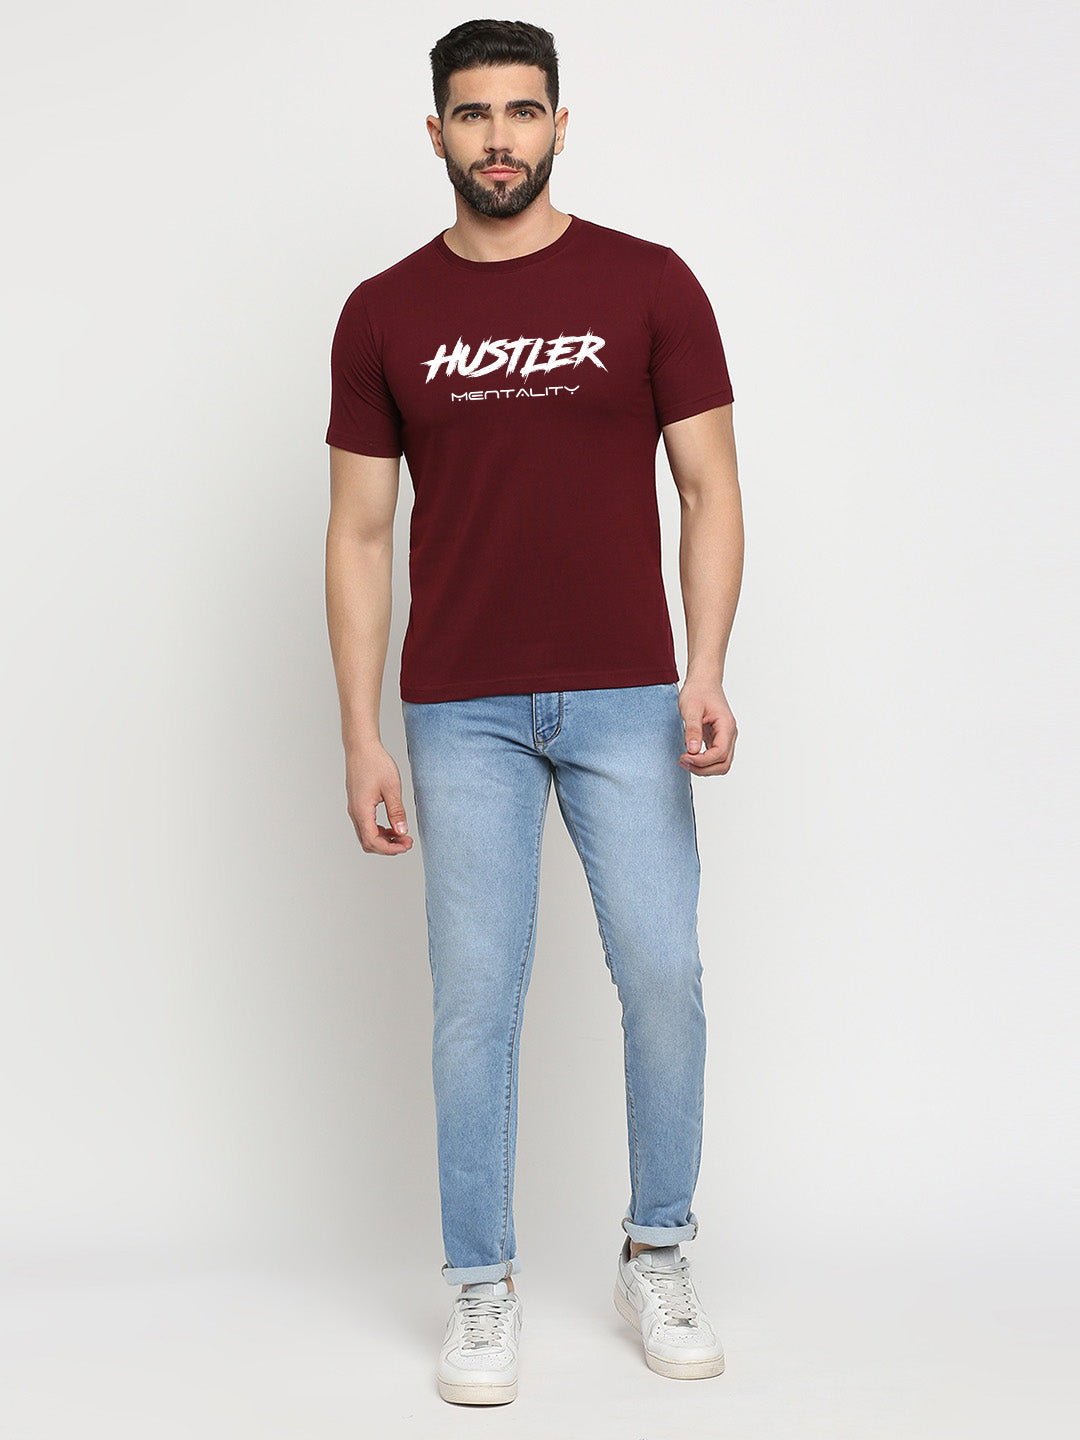 Hustler Mentality T-Shirt